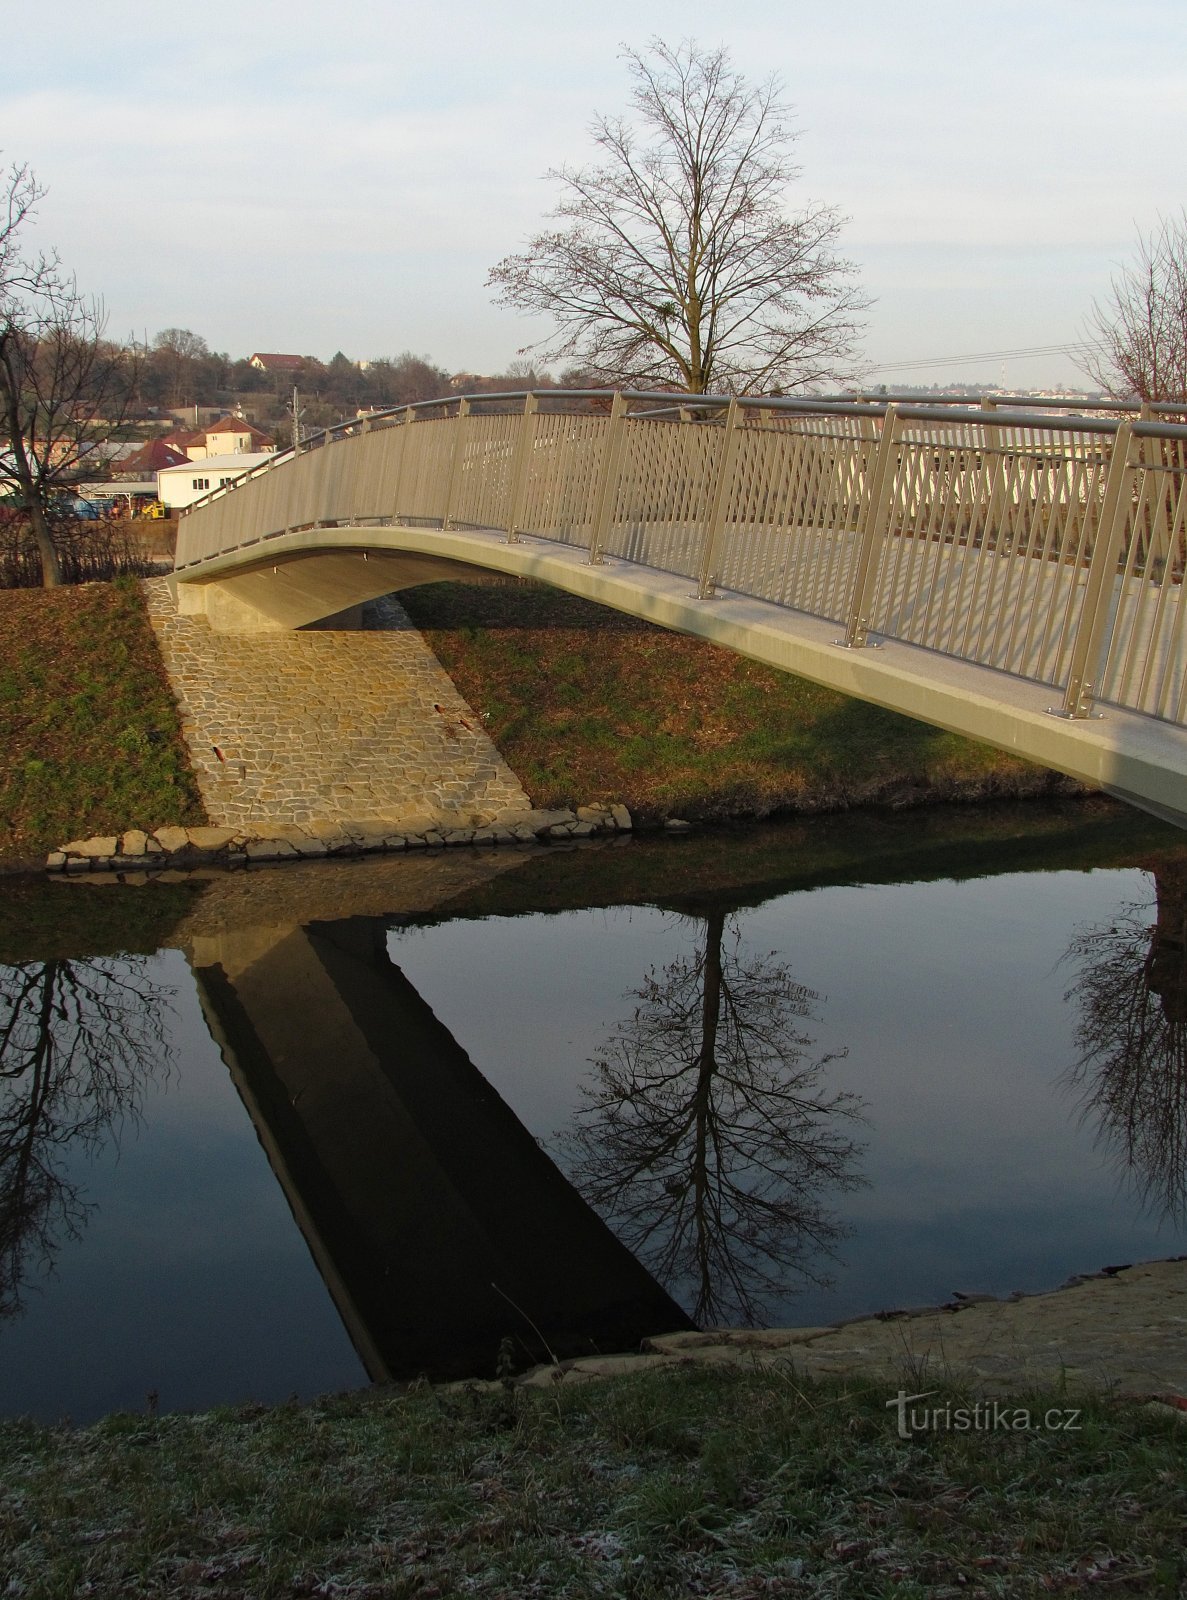 The new Zlín footbridge